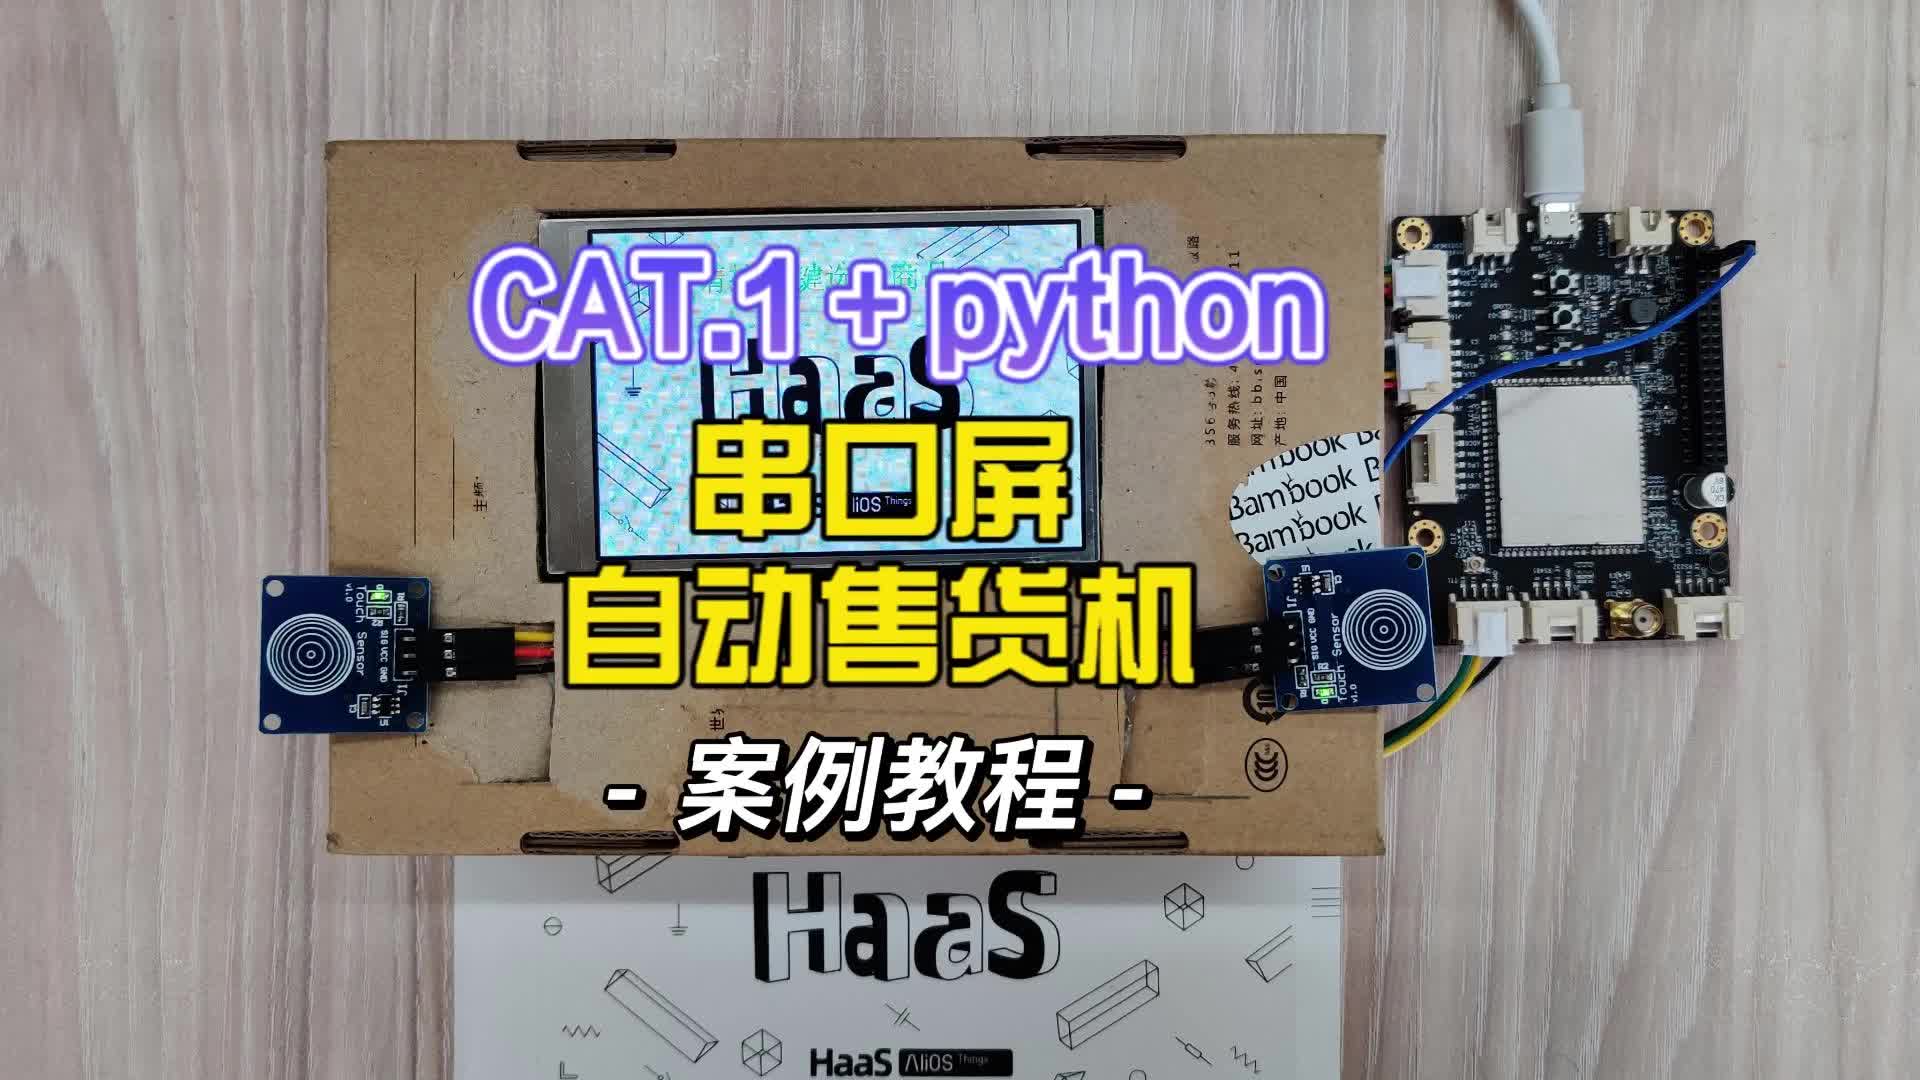 串口屏+python+阿里云模擬自動售貨機場景#嵌入式開發 #售貨機 #python開發板 #物聯網 